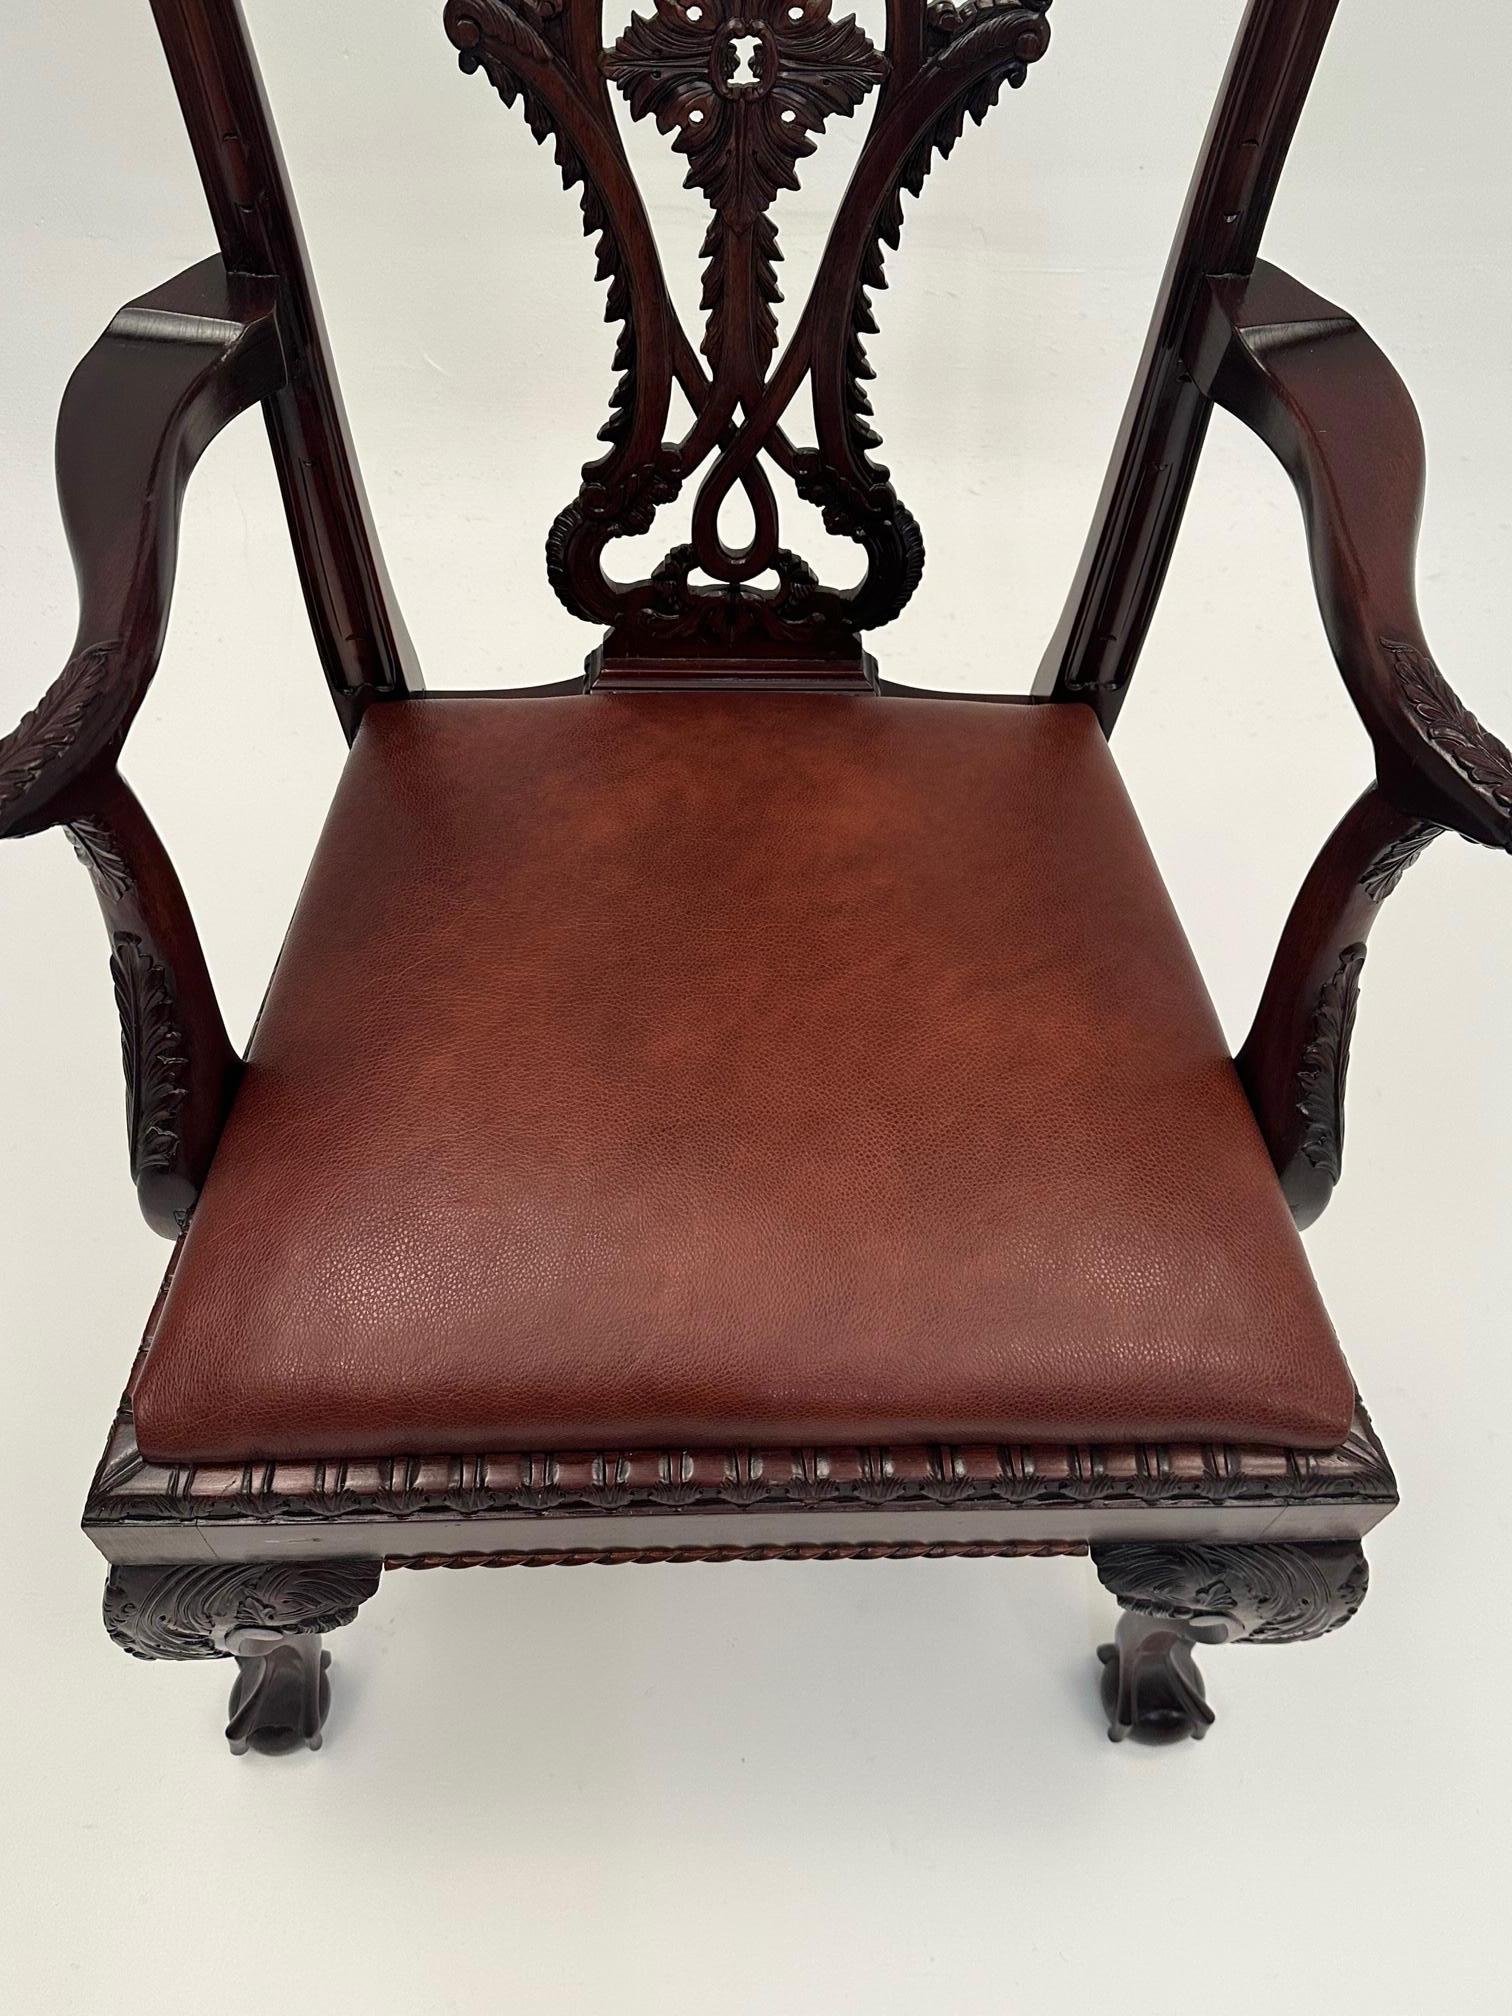 Wunderschöner handgeschnitzter englischer Sessel aus dunklem Mahagoni im Chippendale-Stil mit verzierter Rückenlehne und Kugel- und Klauenfüßen.  Neuerer, reich gepolsterter Sitz aus Leder.
Armhöhe 28